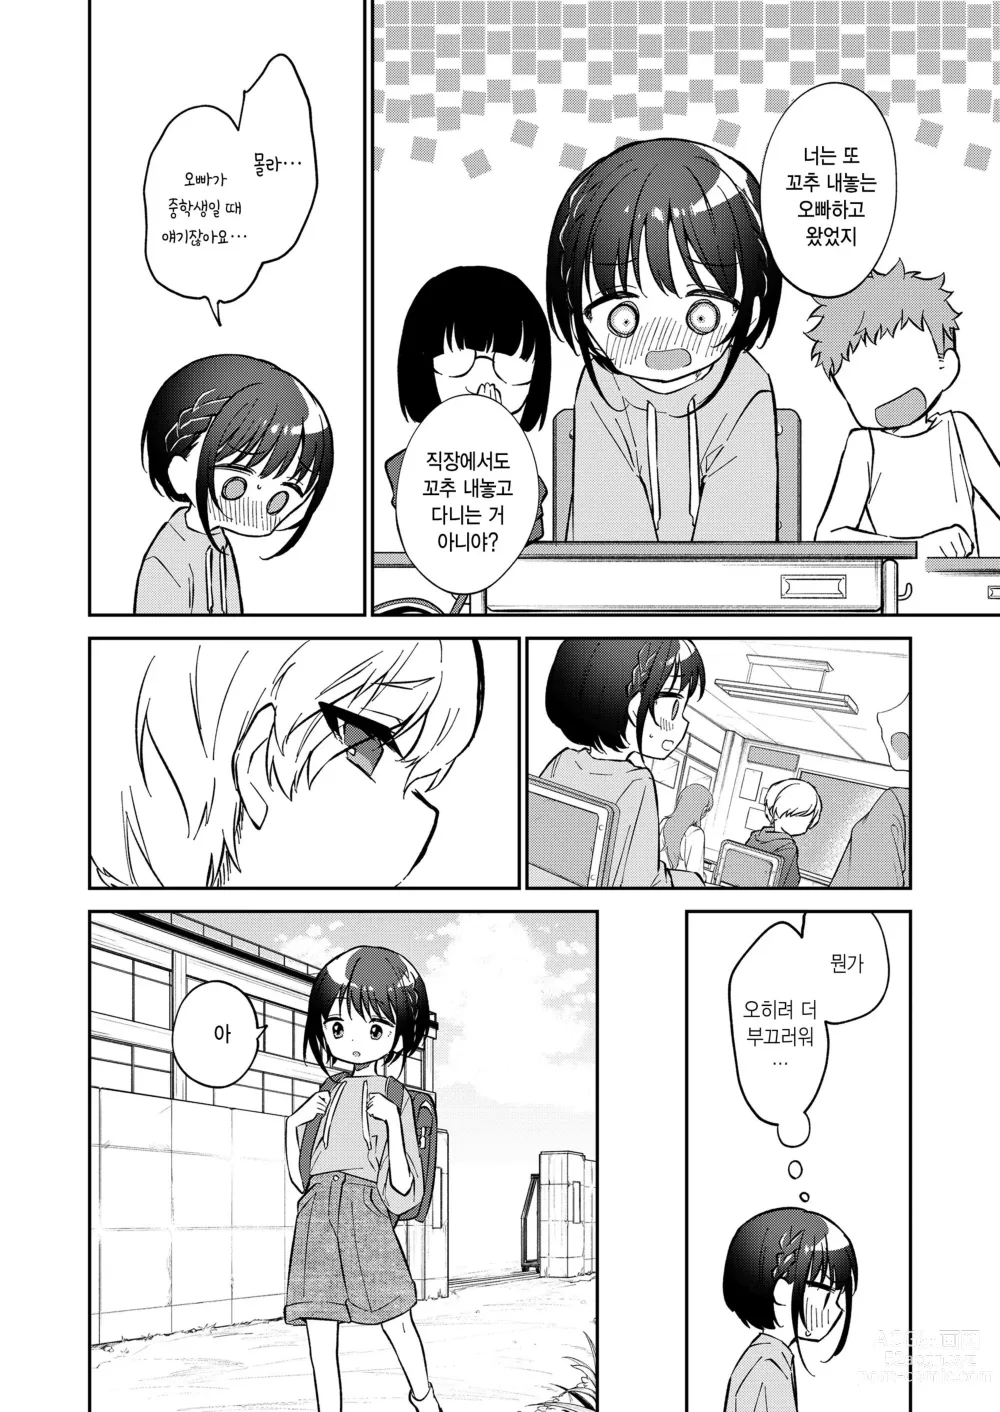 Page 6 of manga Watashi ga iki wo shiteru basho